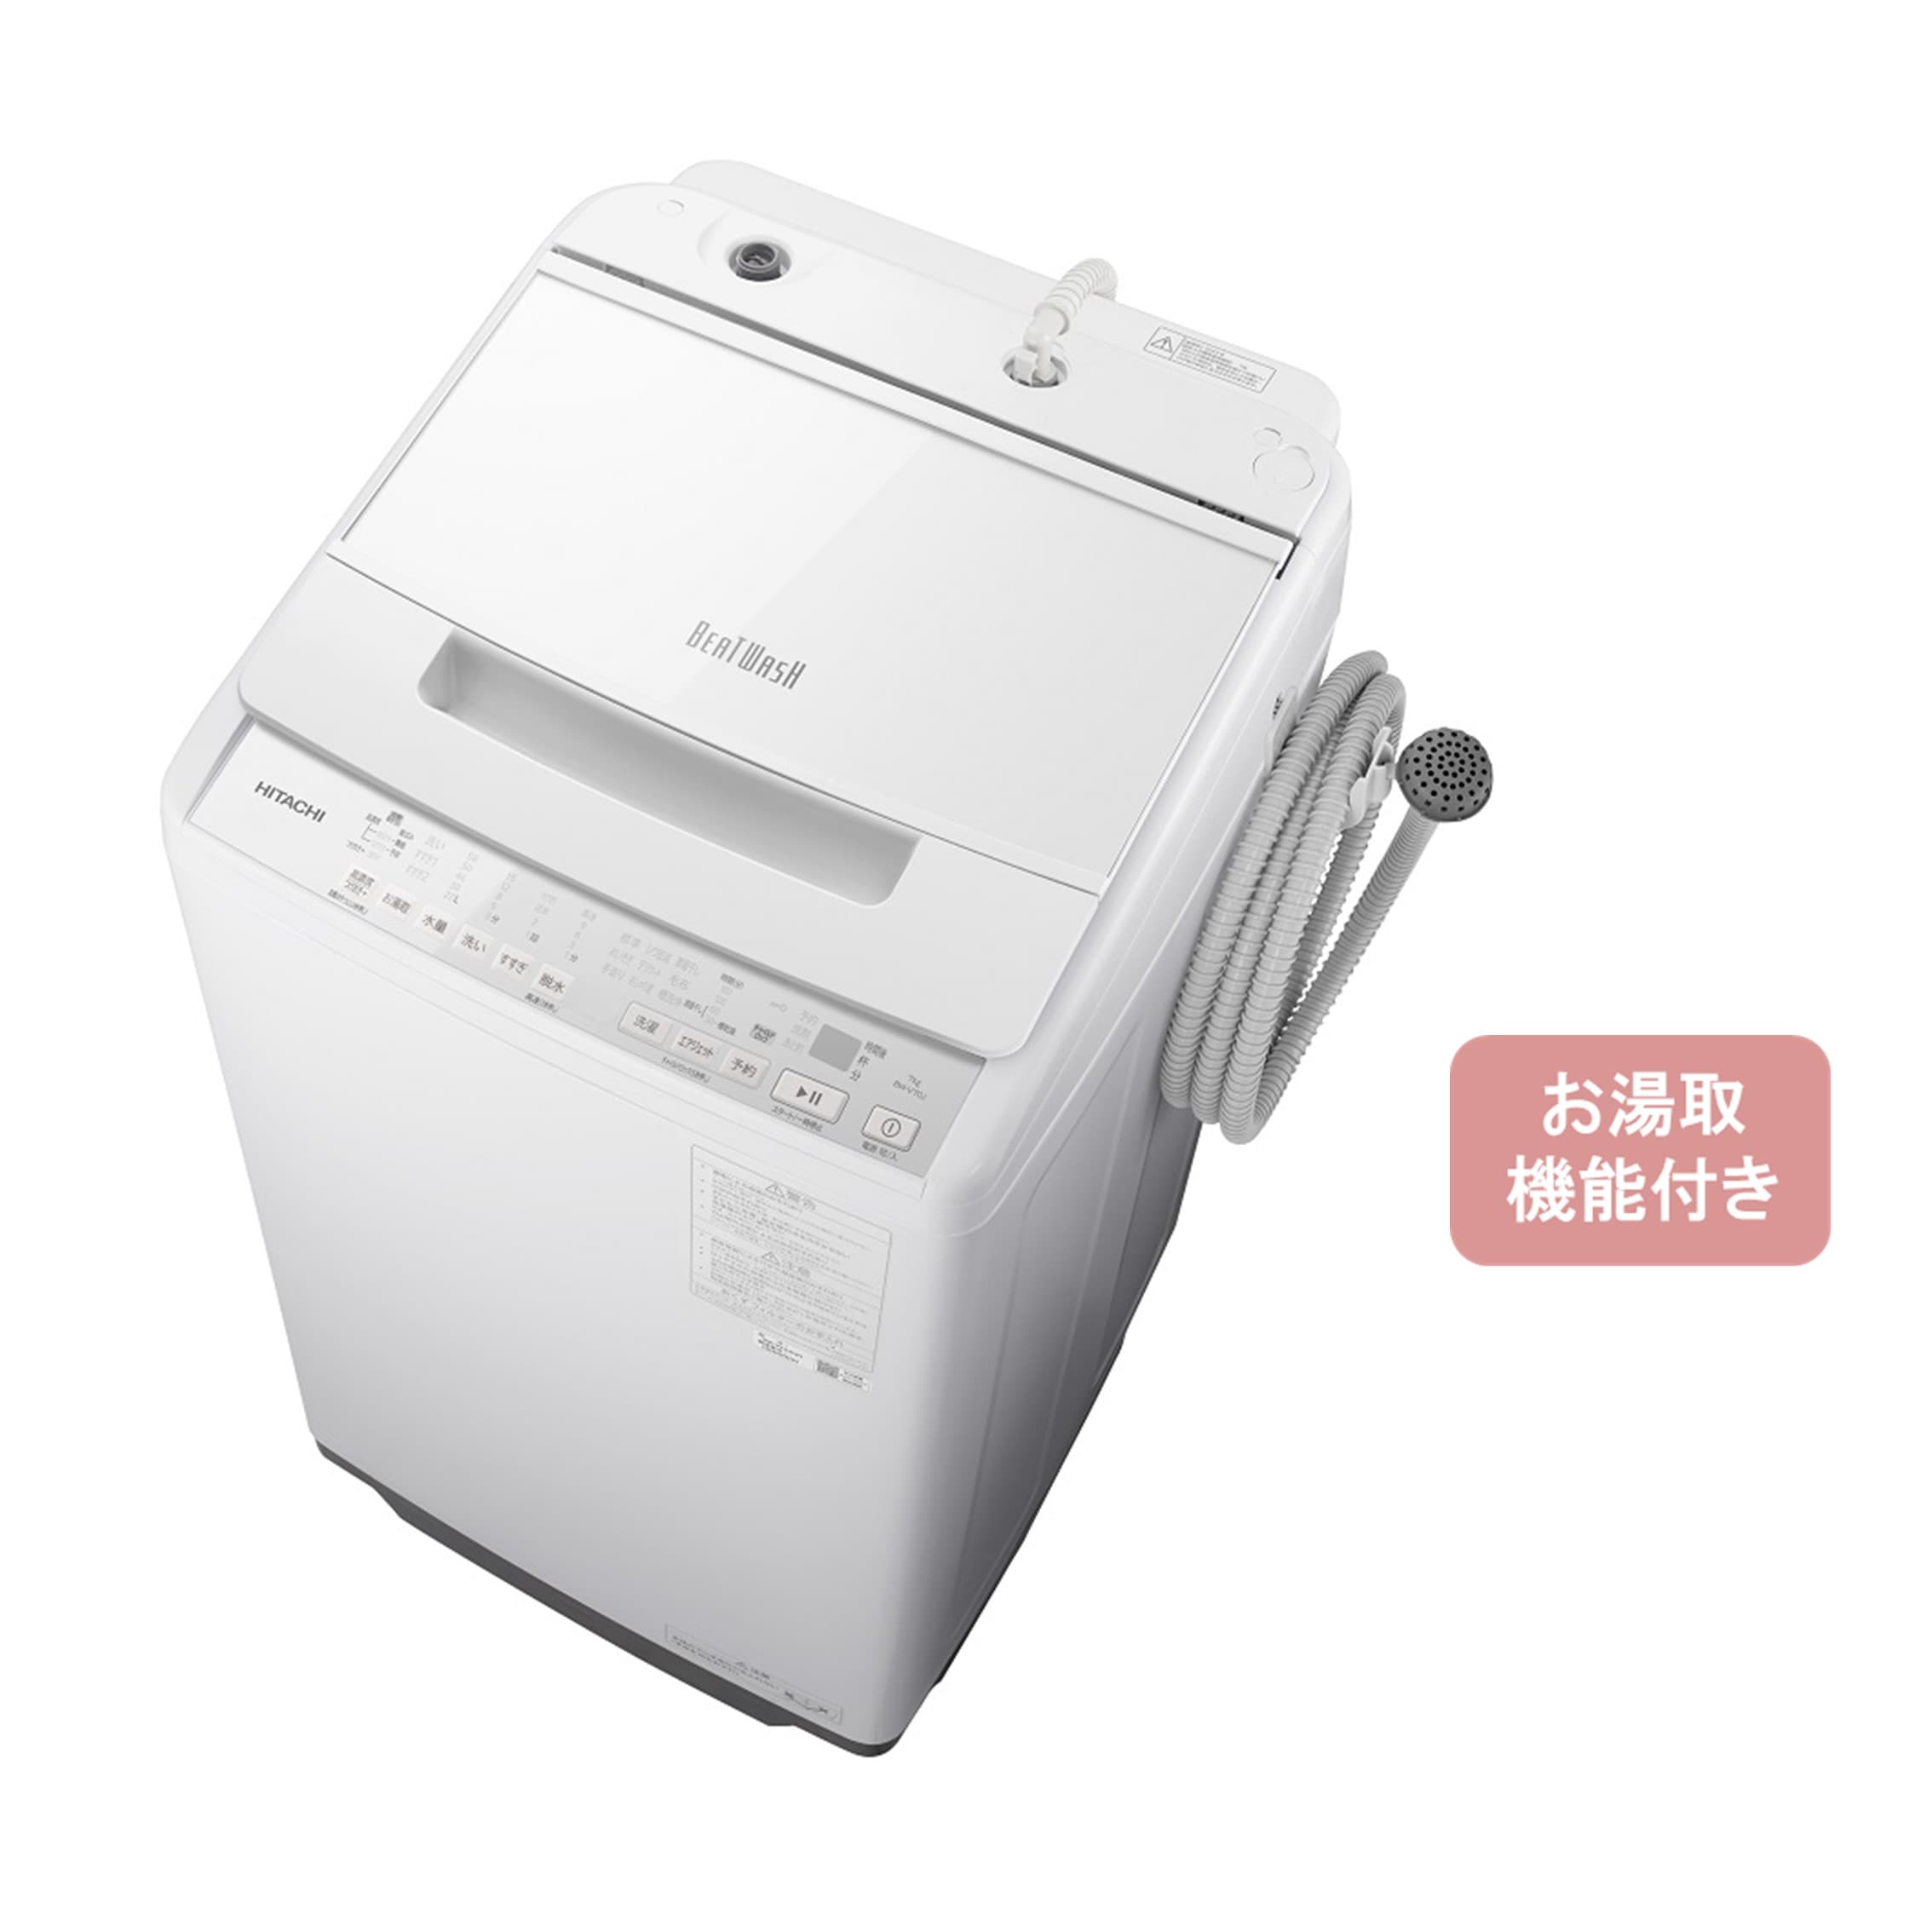 2016年製 日立7kgビートウォッシュBW-7MV 縦型洗濯機 - 生活家電